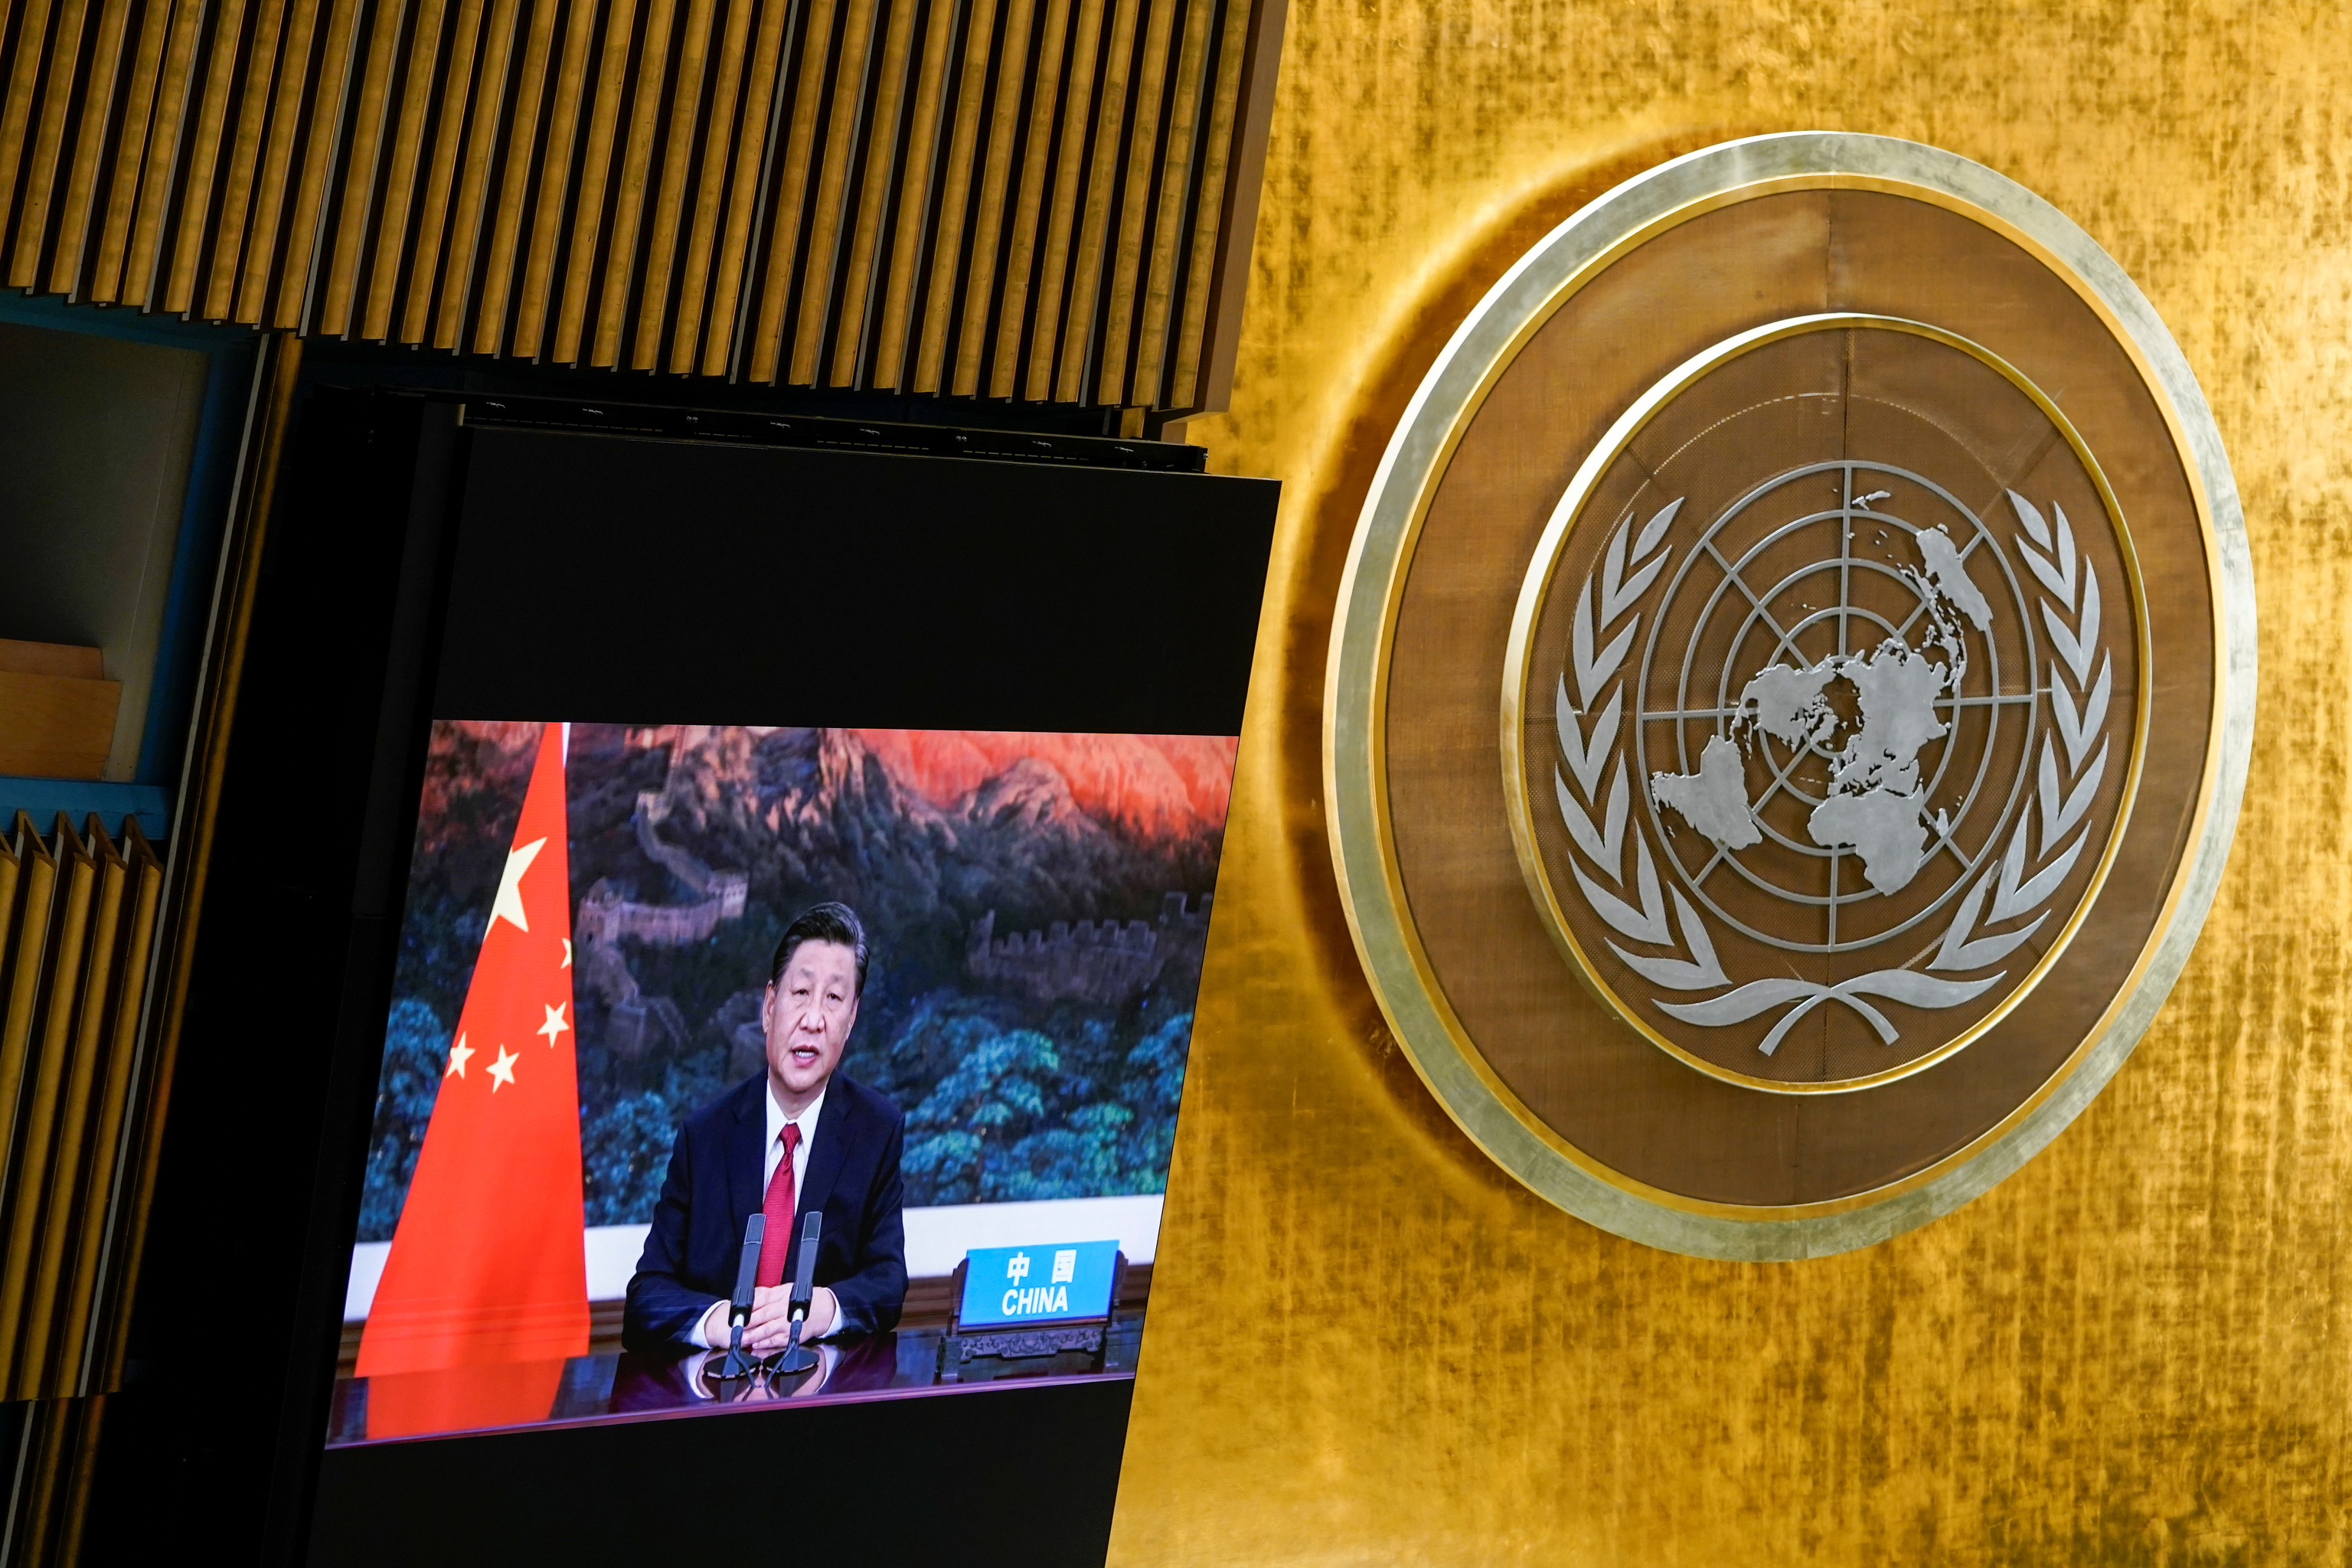 Comparecencia en vídeo de Xi Jinping en la Asamblea General de la ONU